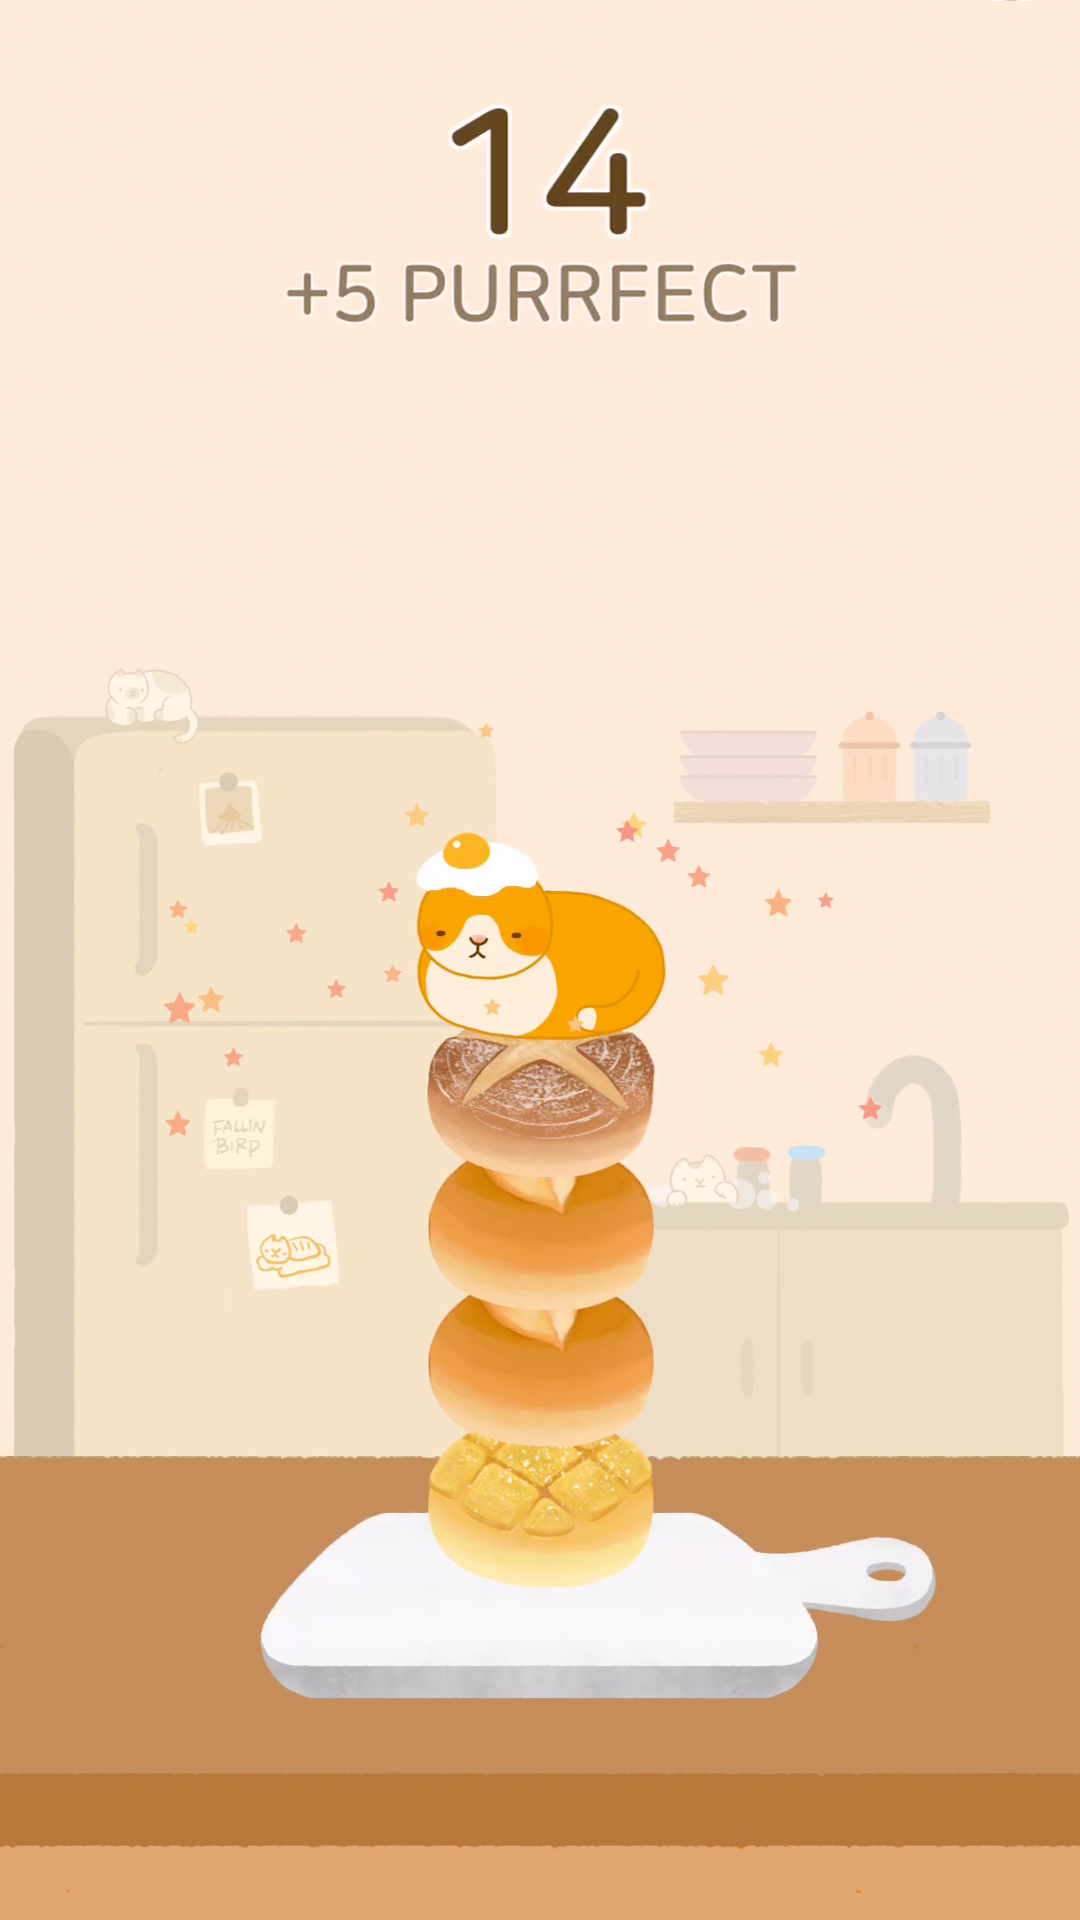 Screenshot 1 of 貓麵包店 - 堆棧遊戲 